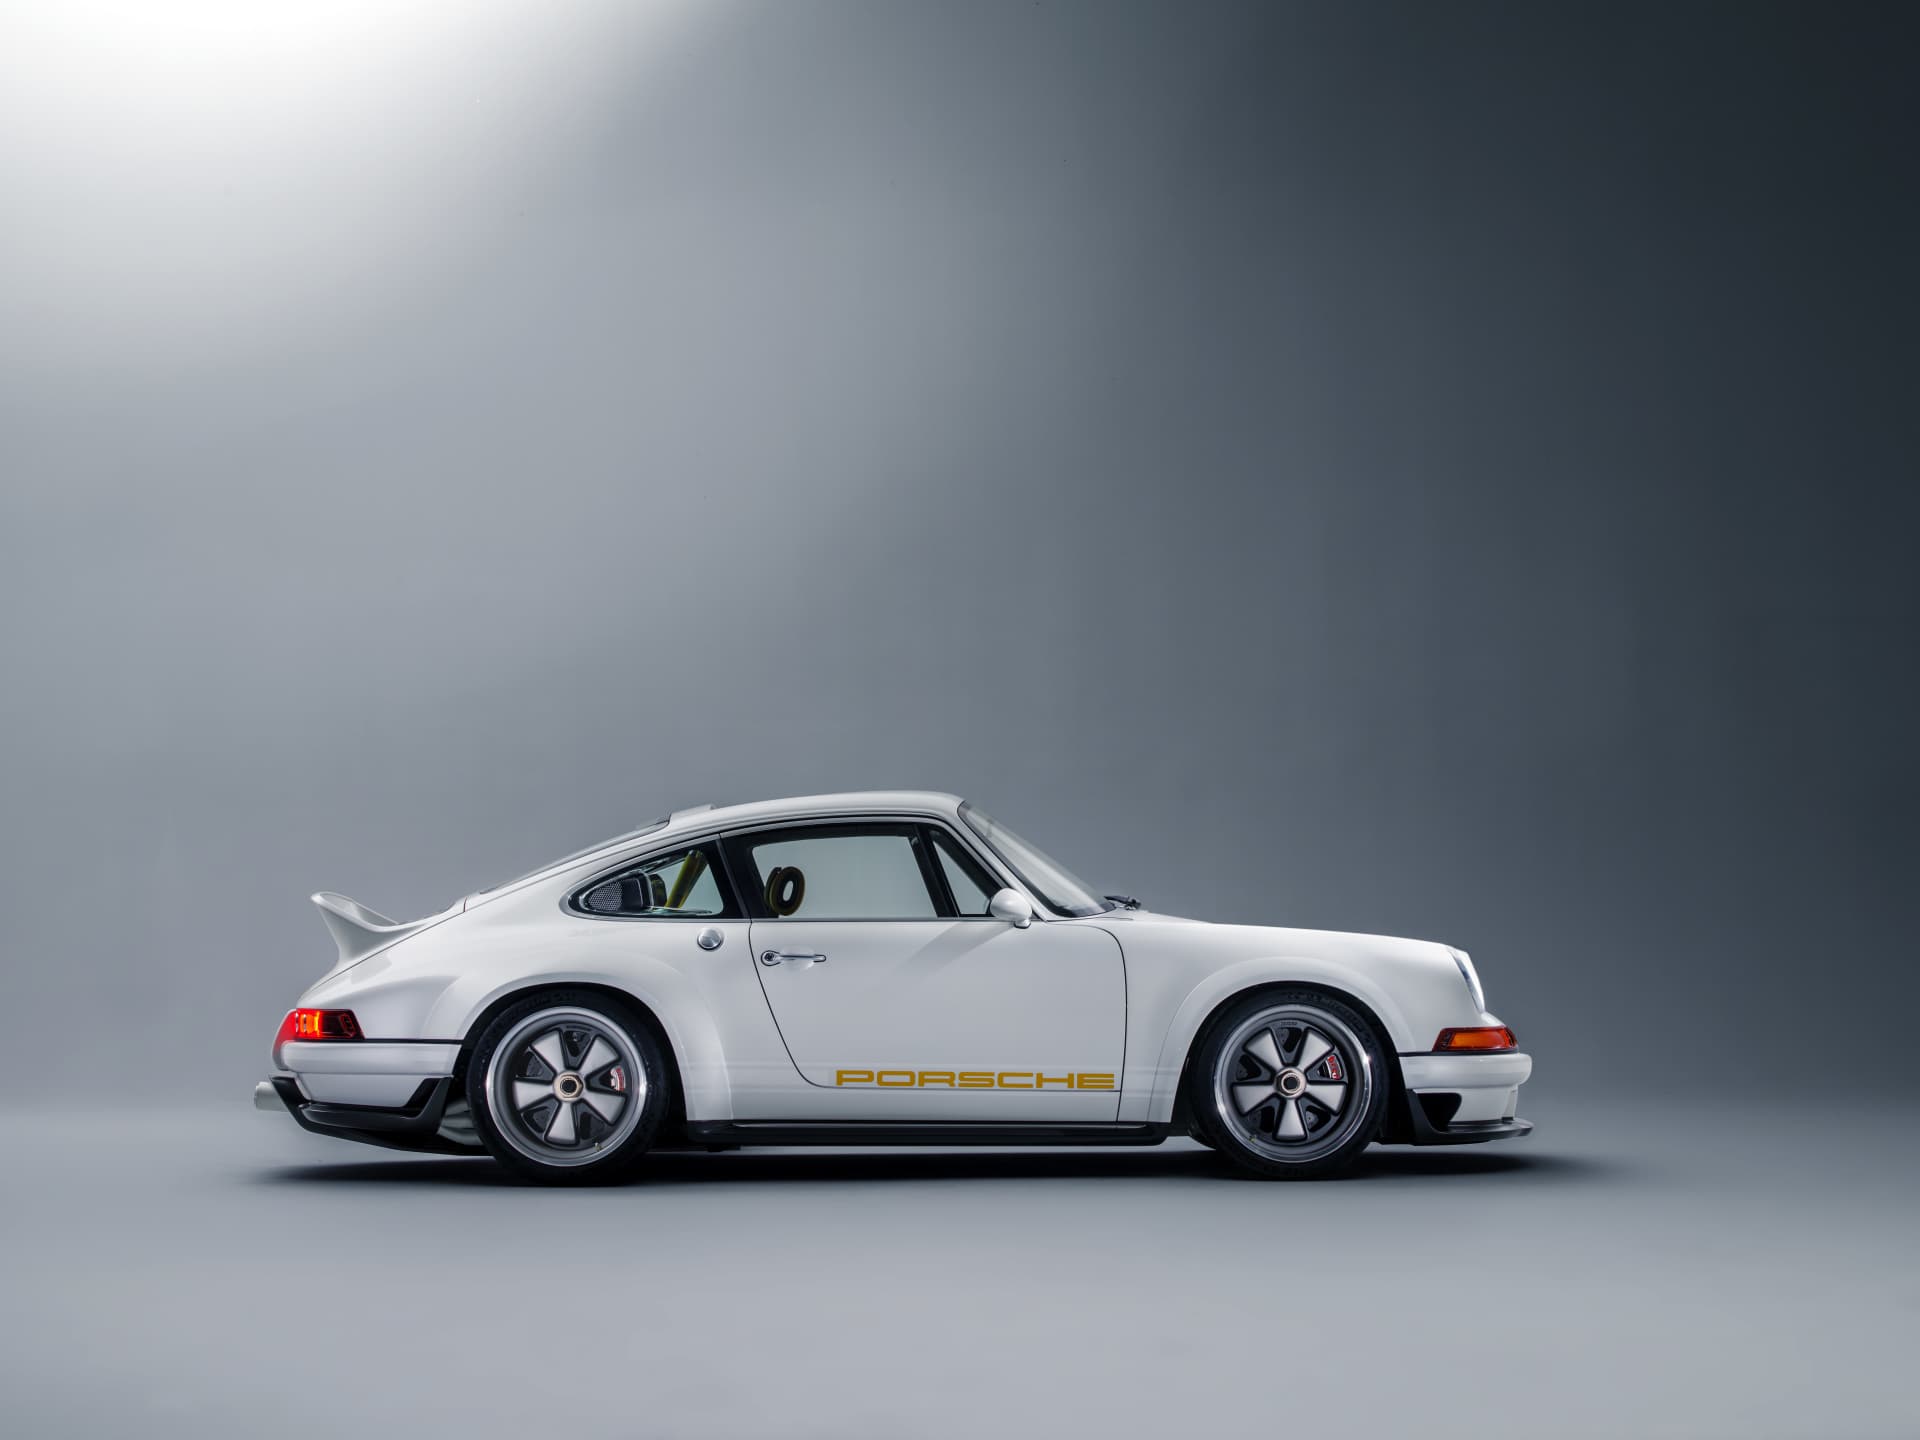 Singer 911 Williams Porsche 7